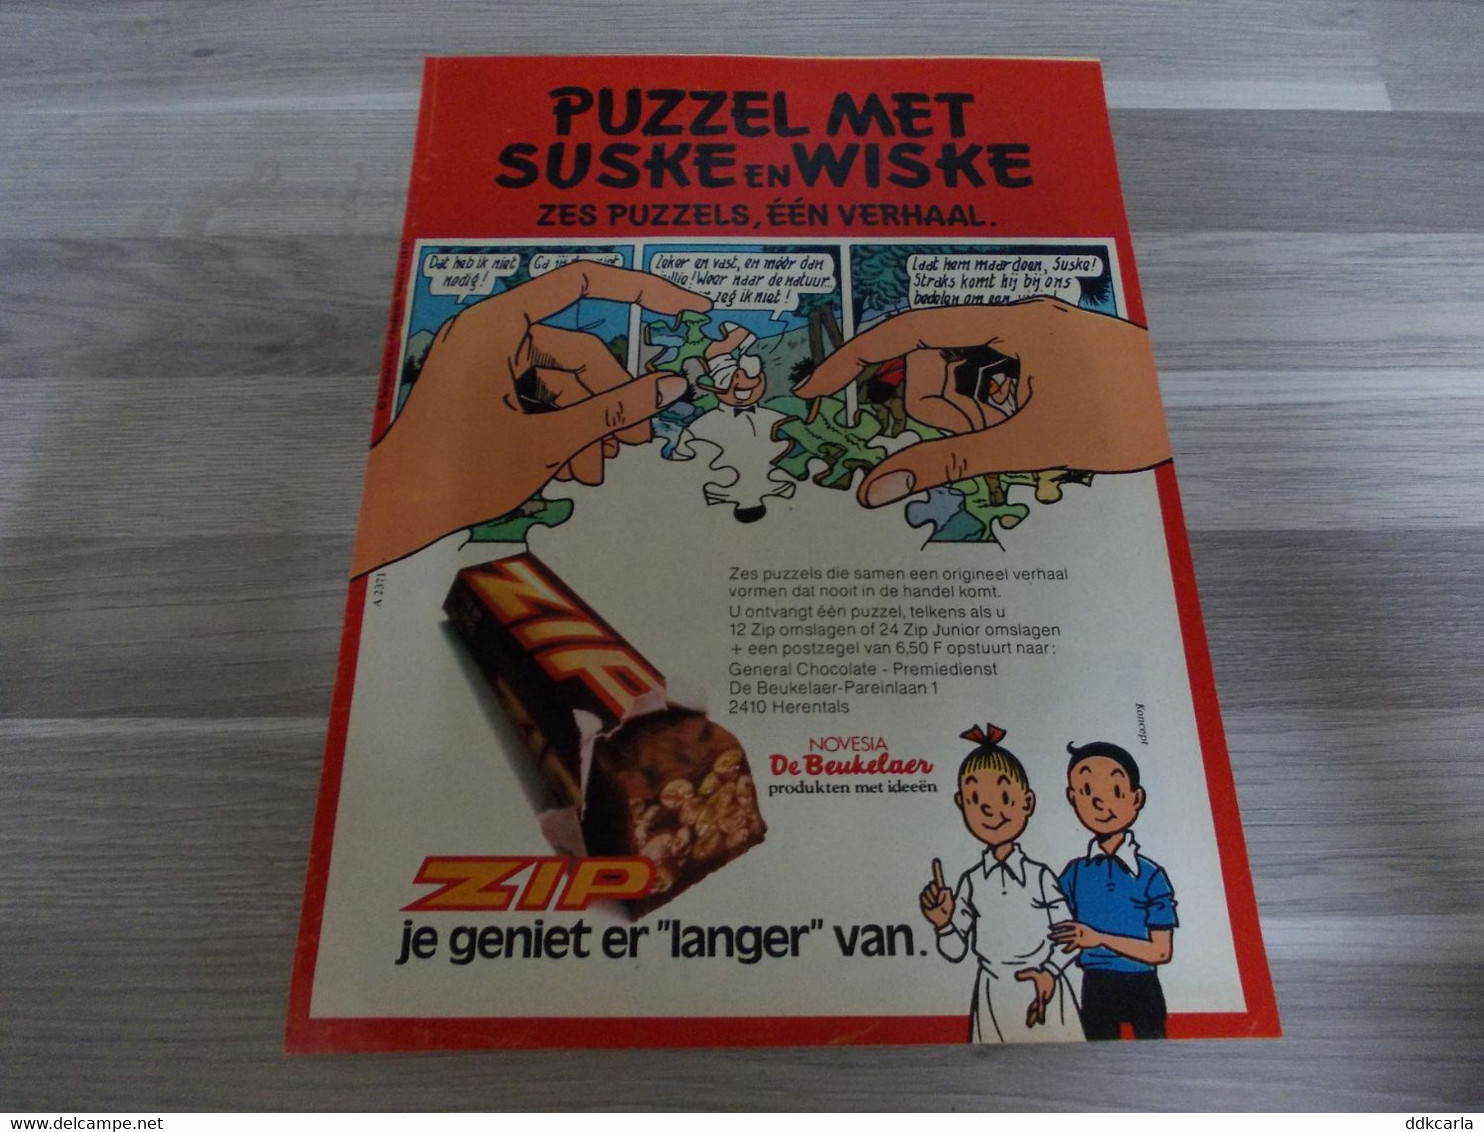 Reclame Uit Oud Magazine Jaren 1977 - Puzzel Met Suske & Wiske - Zes Puzzels, één Verhaal Van Zip Chocolade - Schokolade